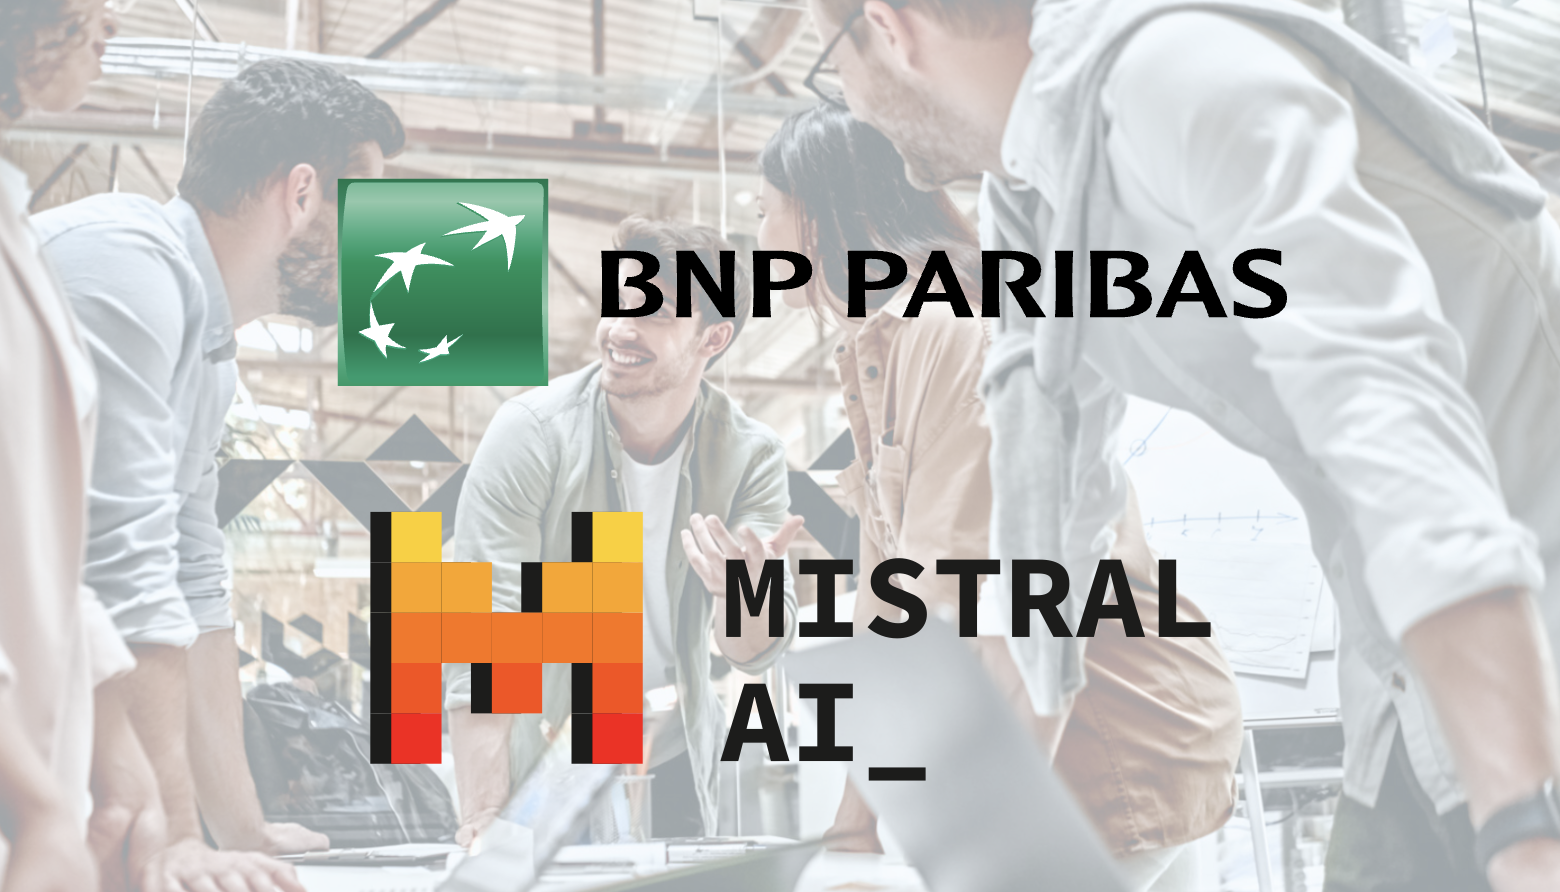 BNP Paribas et Mistral AI signent un accord de partenariat couvrant tous les modèles de Mistral AI